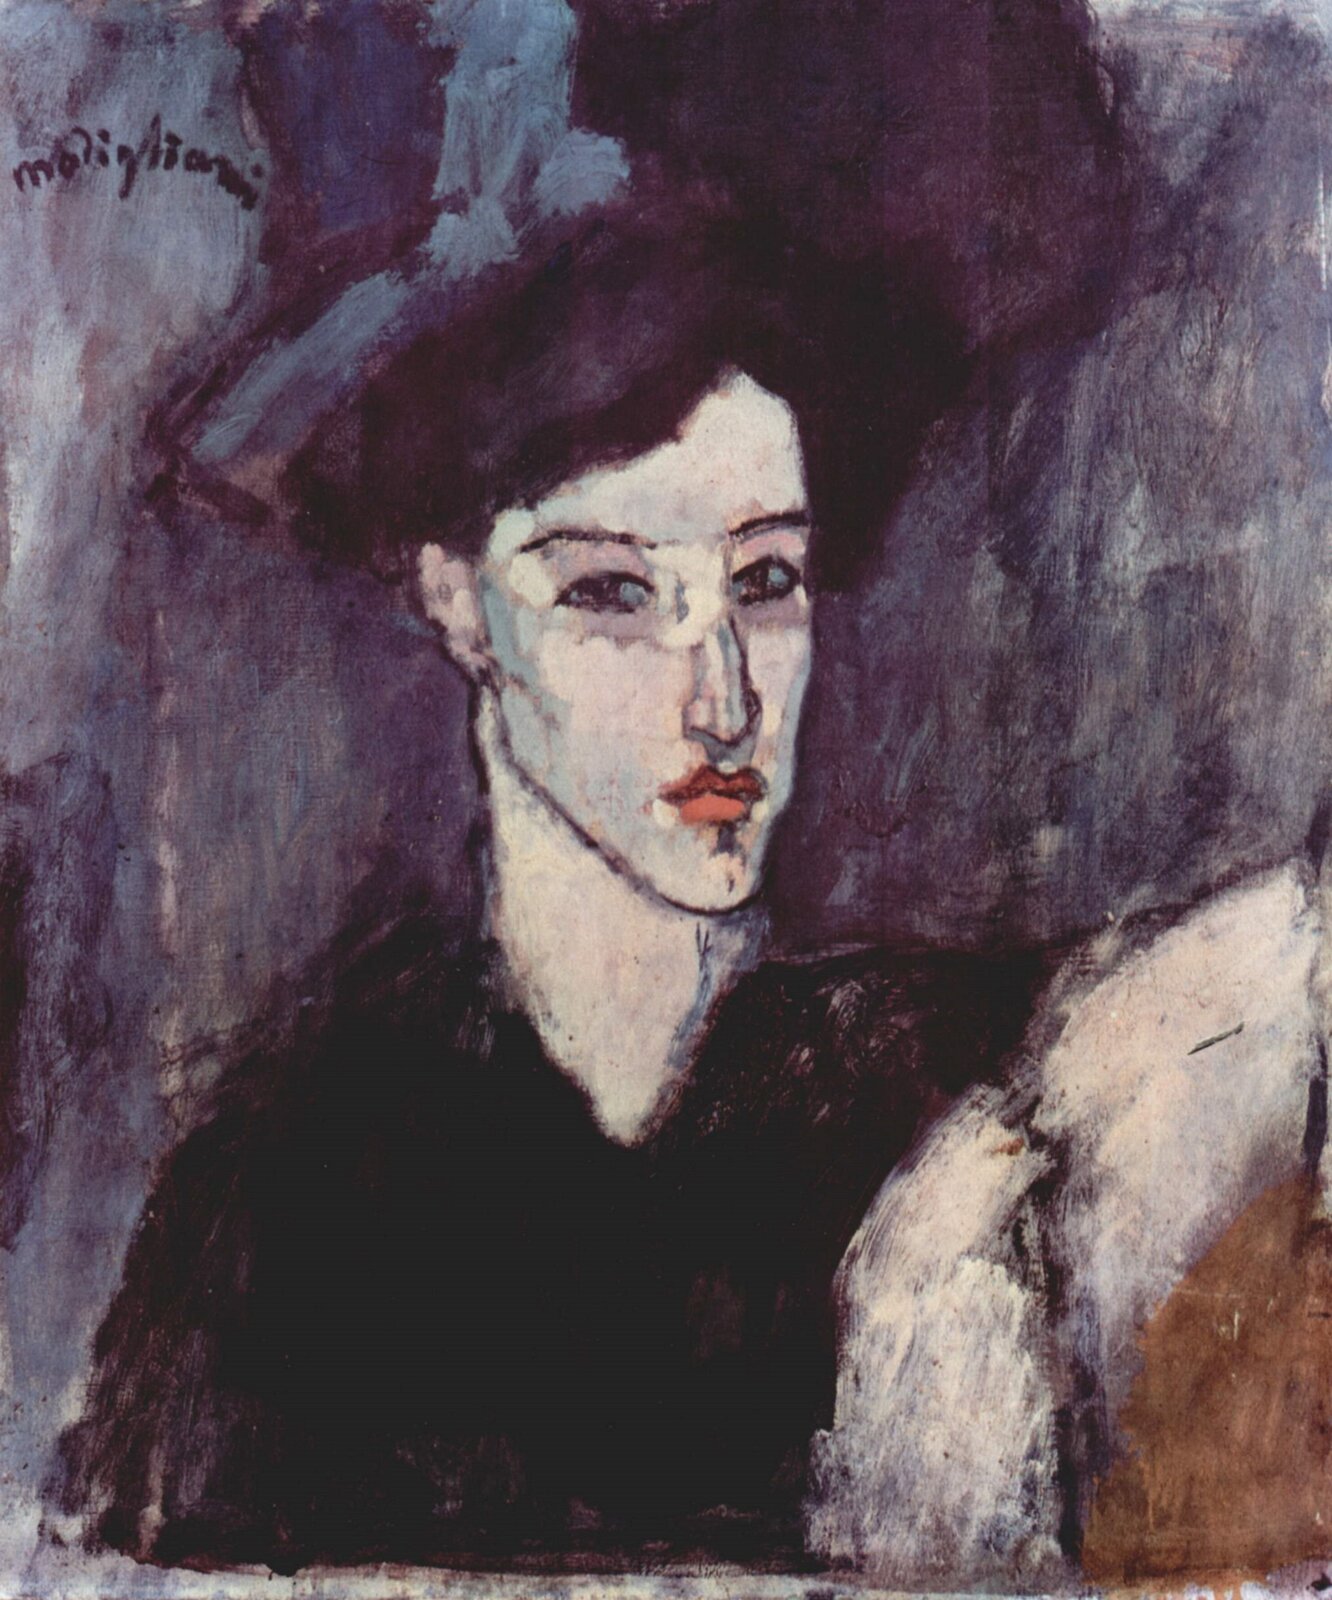 Ilustracja przedstawia obraz Amedeo Modigliani pt. „Żydówka”. Obraz ukazuje kobietę z pociągłą twarzą i czerwonymi ustami. Żydówka ubrana jest w czarną koszulę.